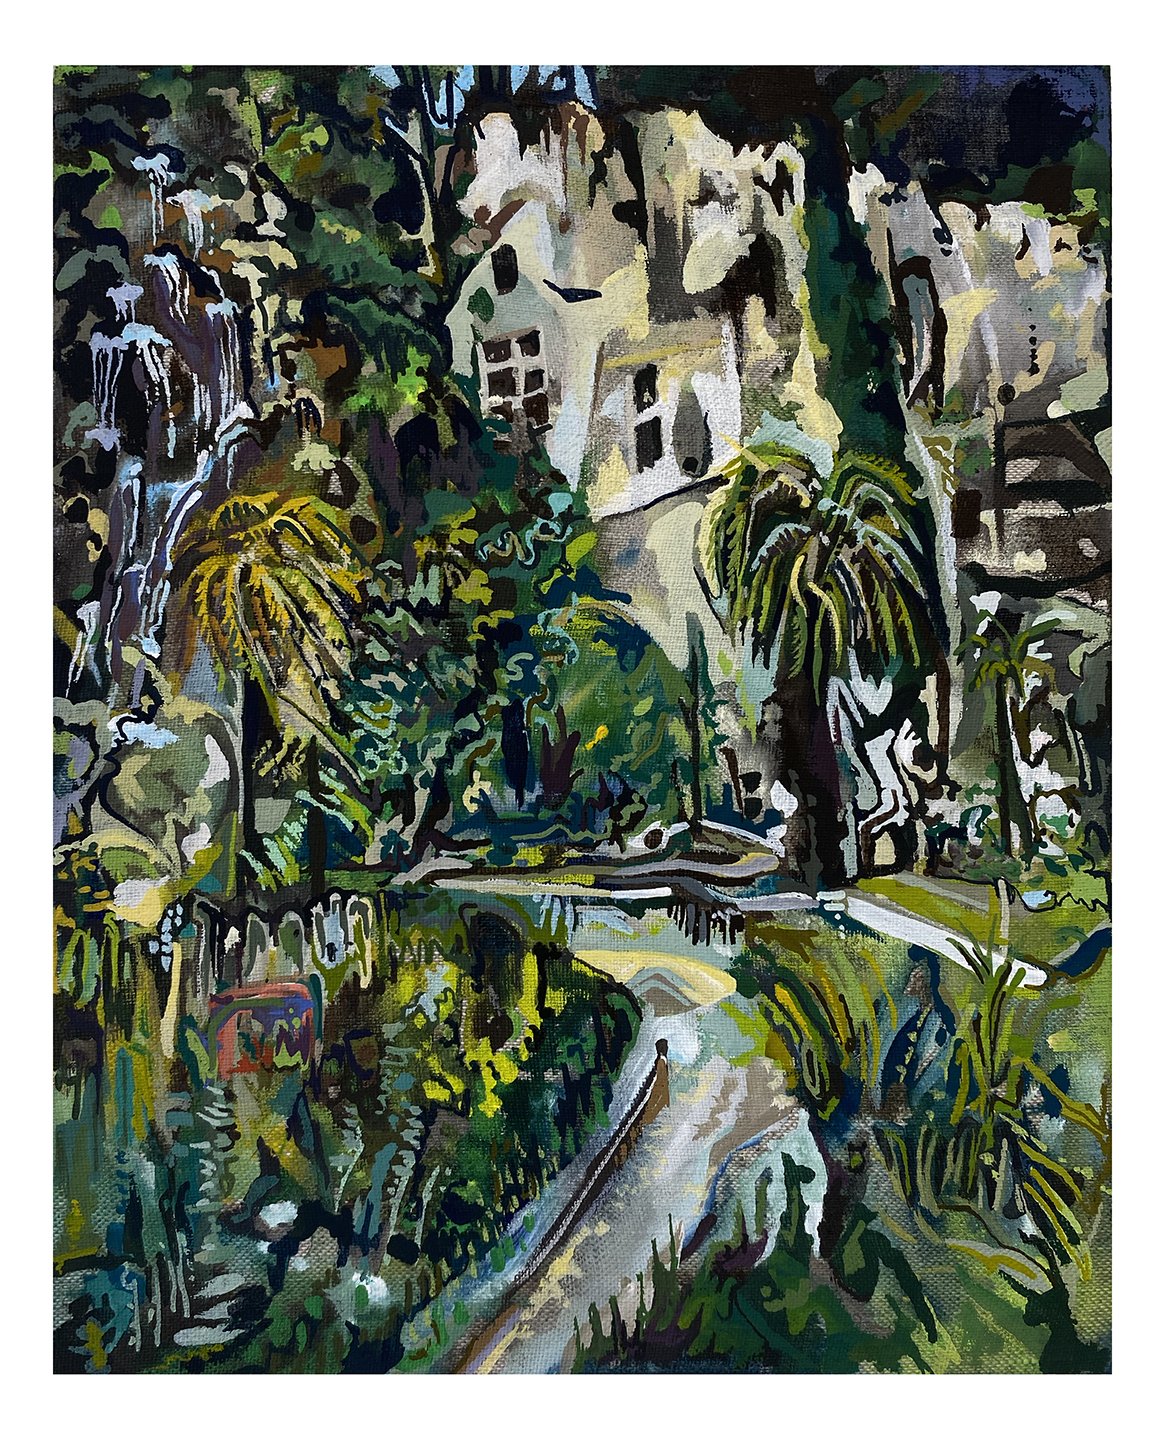  Maria Calandra, Rocher et Grottes Troglodytes de Cotignac, 2021, acrylic on linen over panel, 10 x 8 inches 